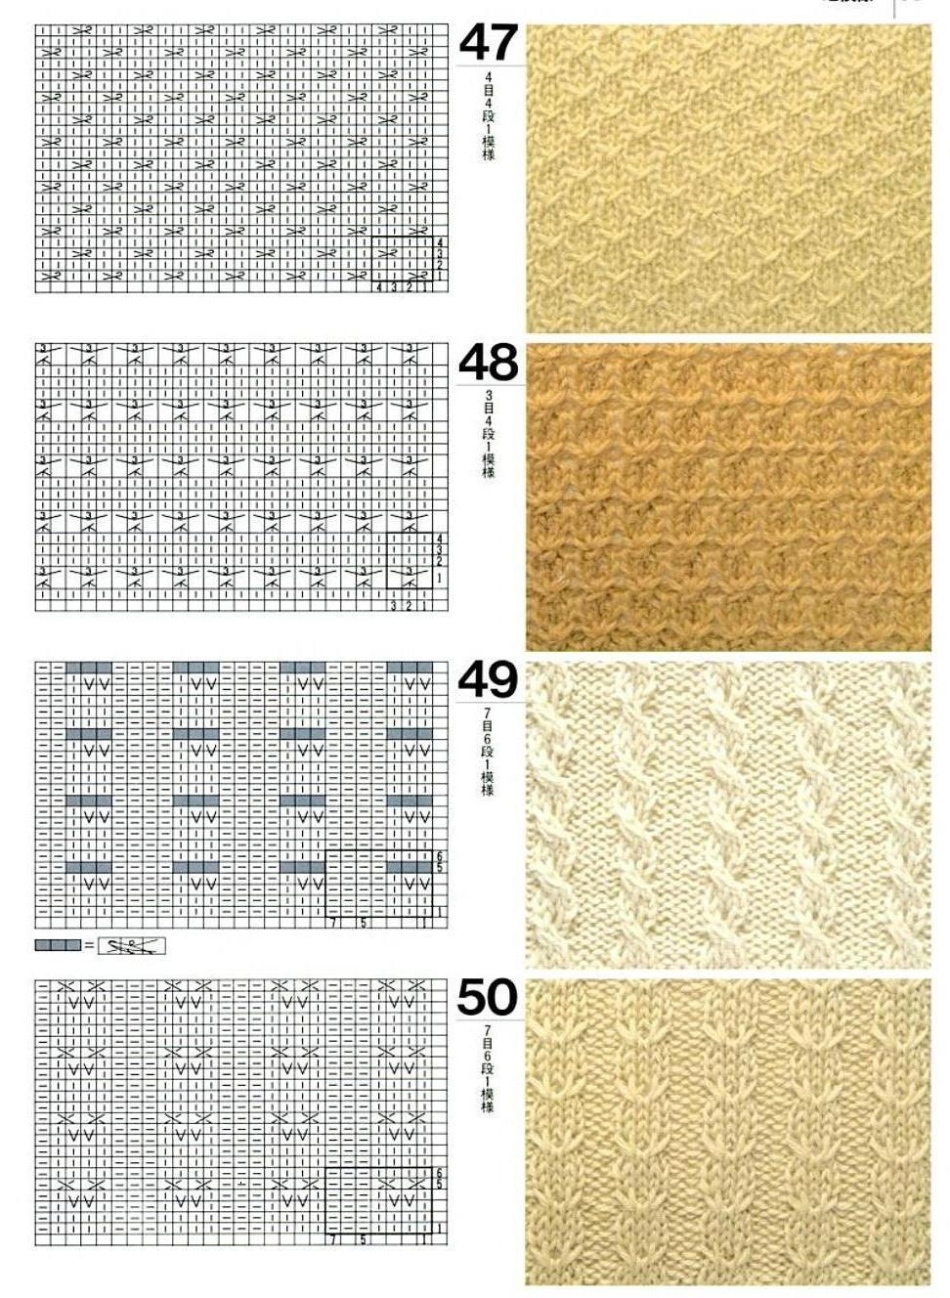 Μοτίβα μοτίβων για πλέξιμο γυναικεία γιλέκα με βελόνες πλέξιμο, Παράδειγμα 6